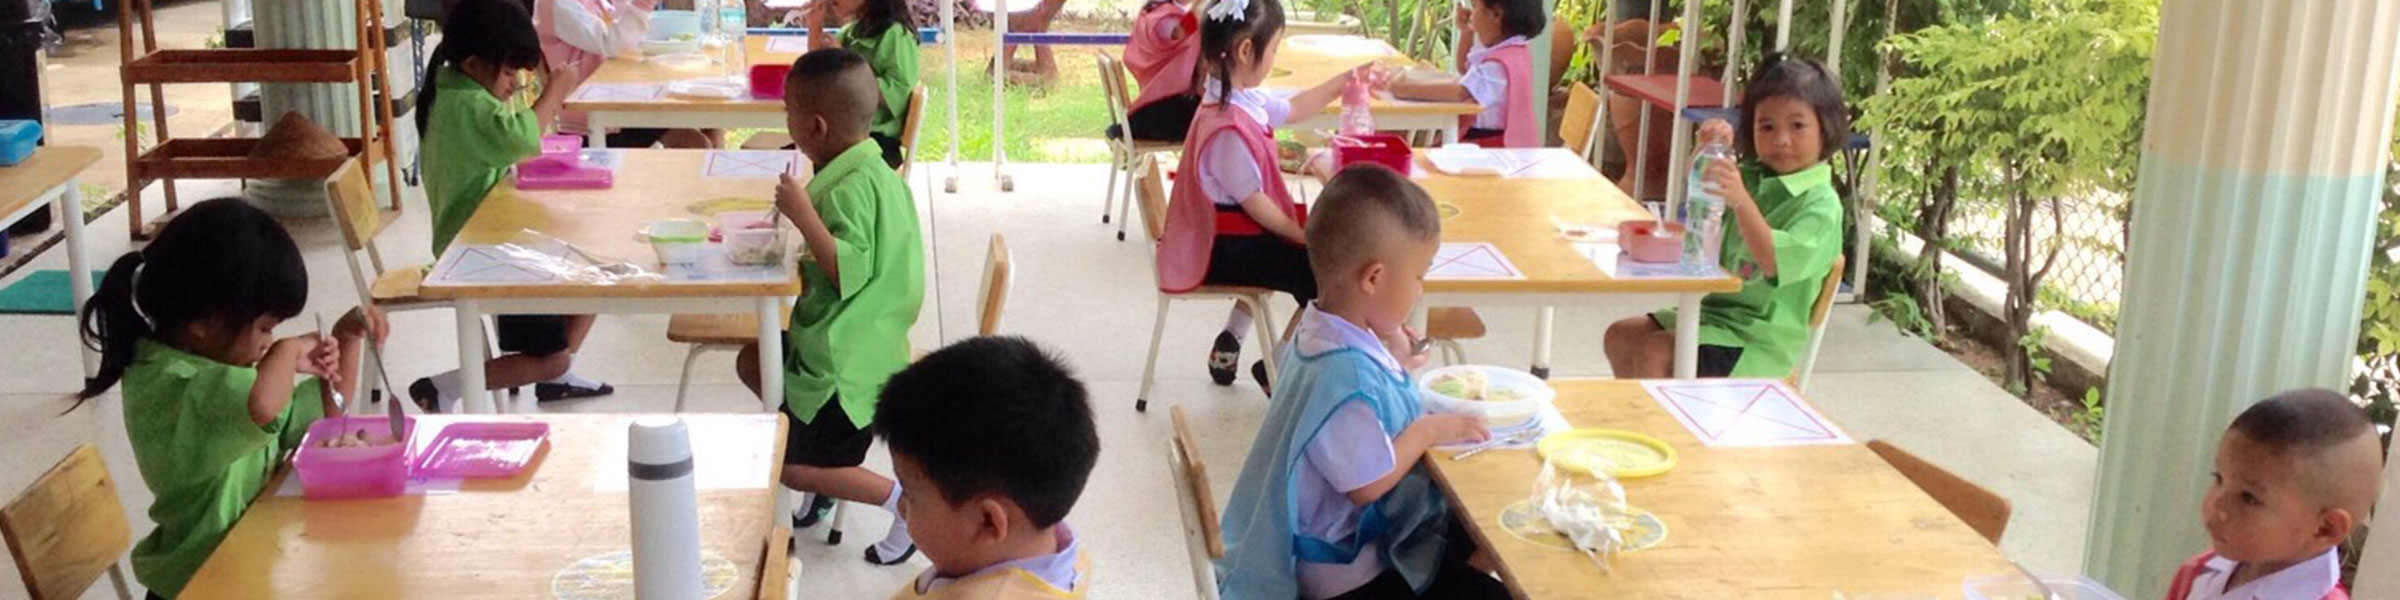 School Children Eating Thailand